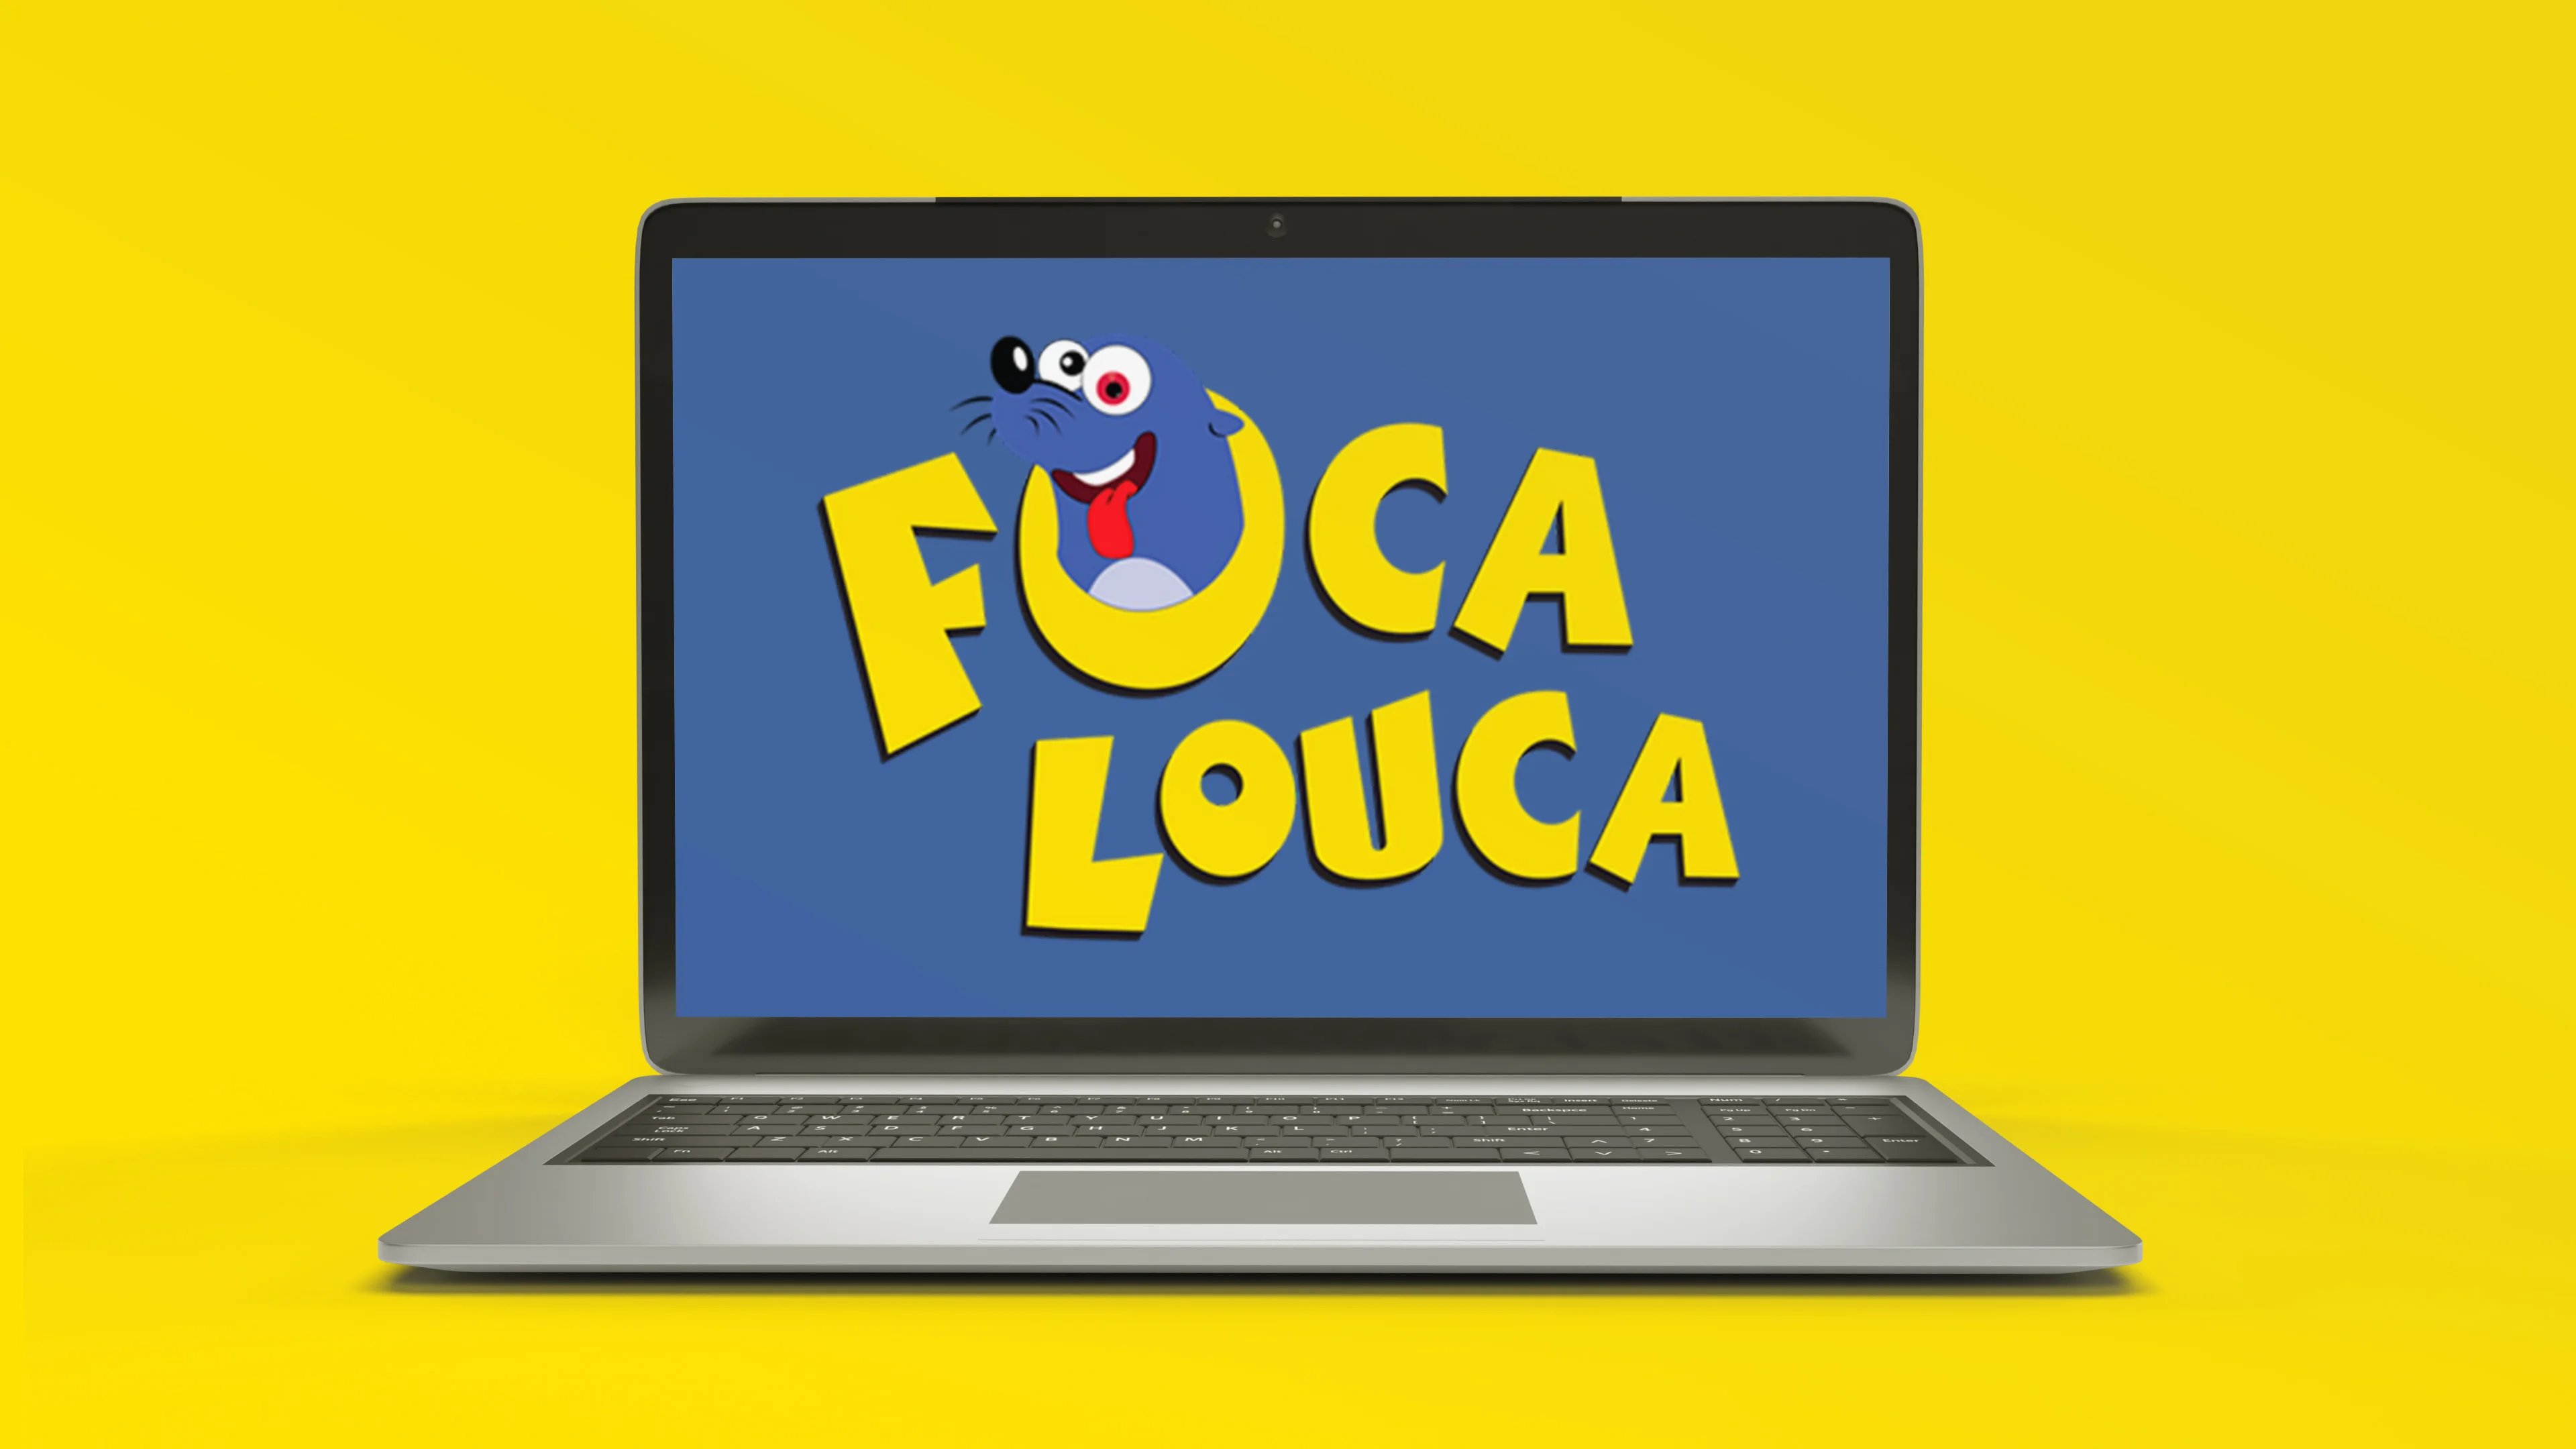 Foca Louca potencializou seu negócio com poder da informação